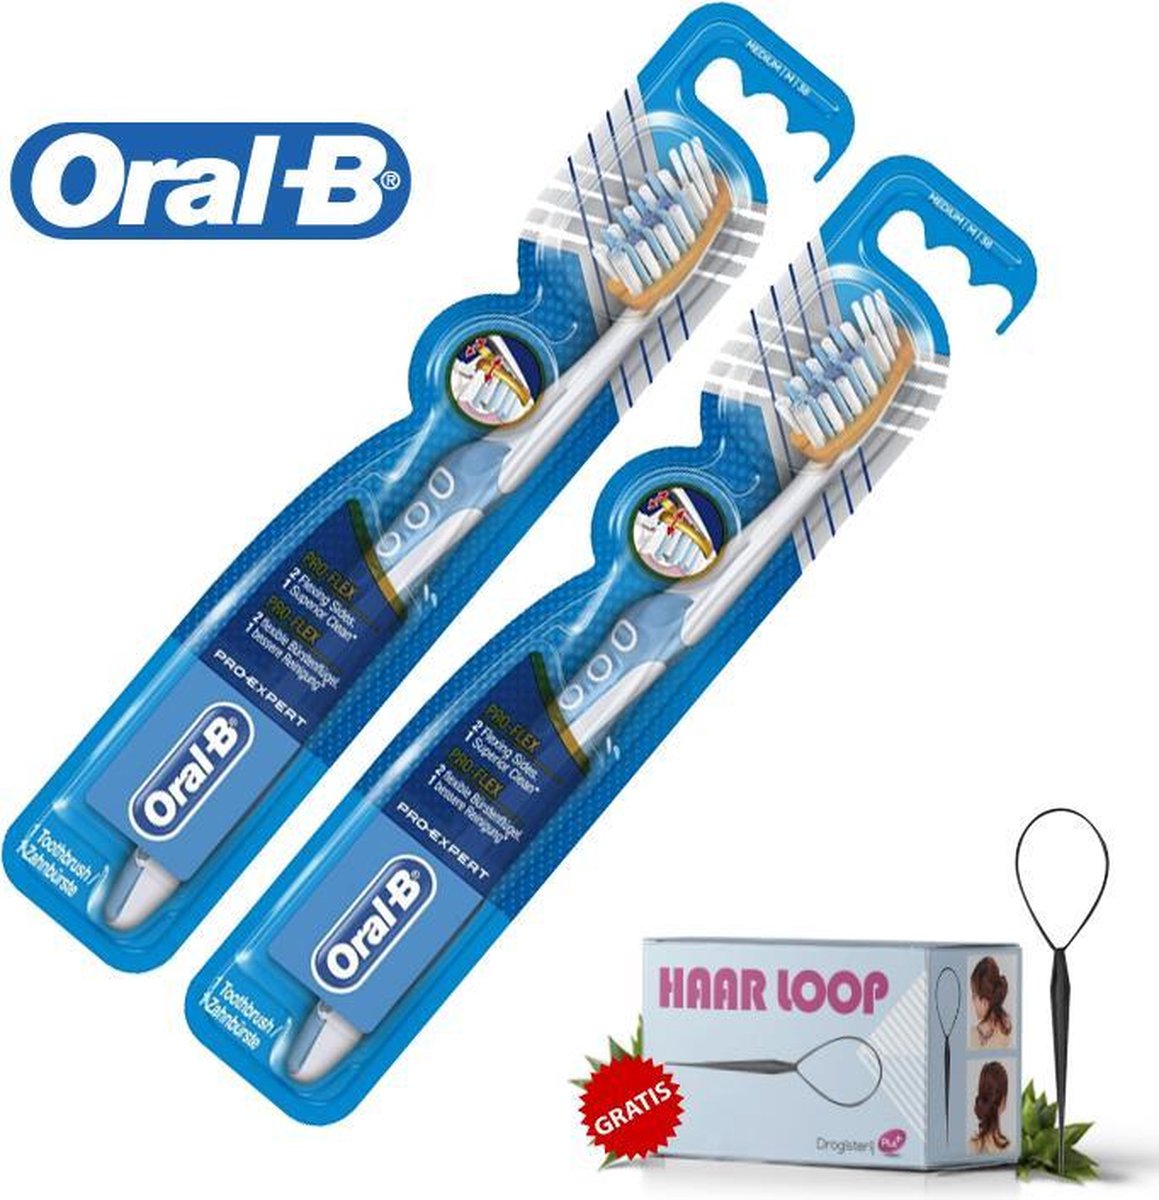 Oral B Duo Pack Pro Flex Pro Expert Tandenborstel + Haarloop